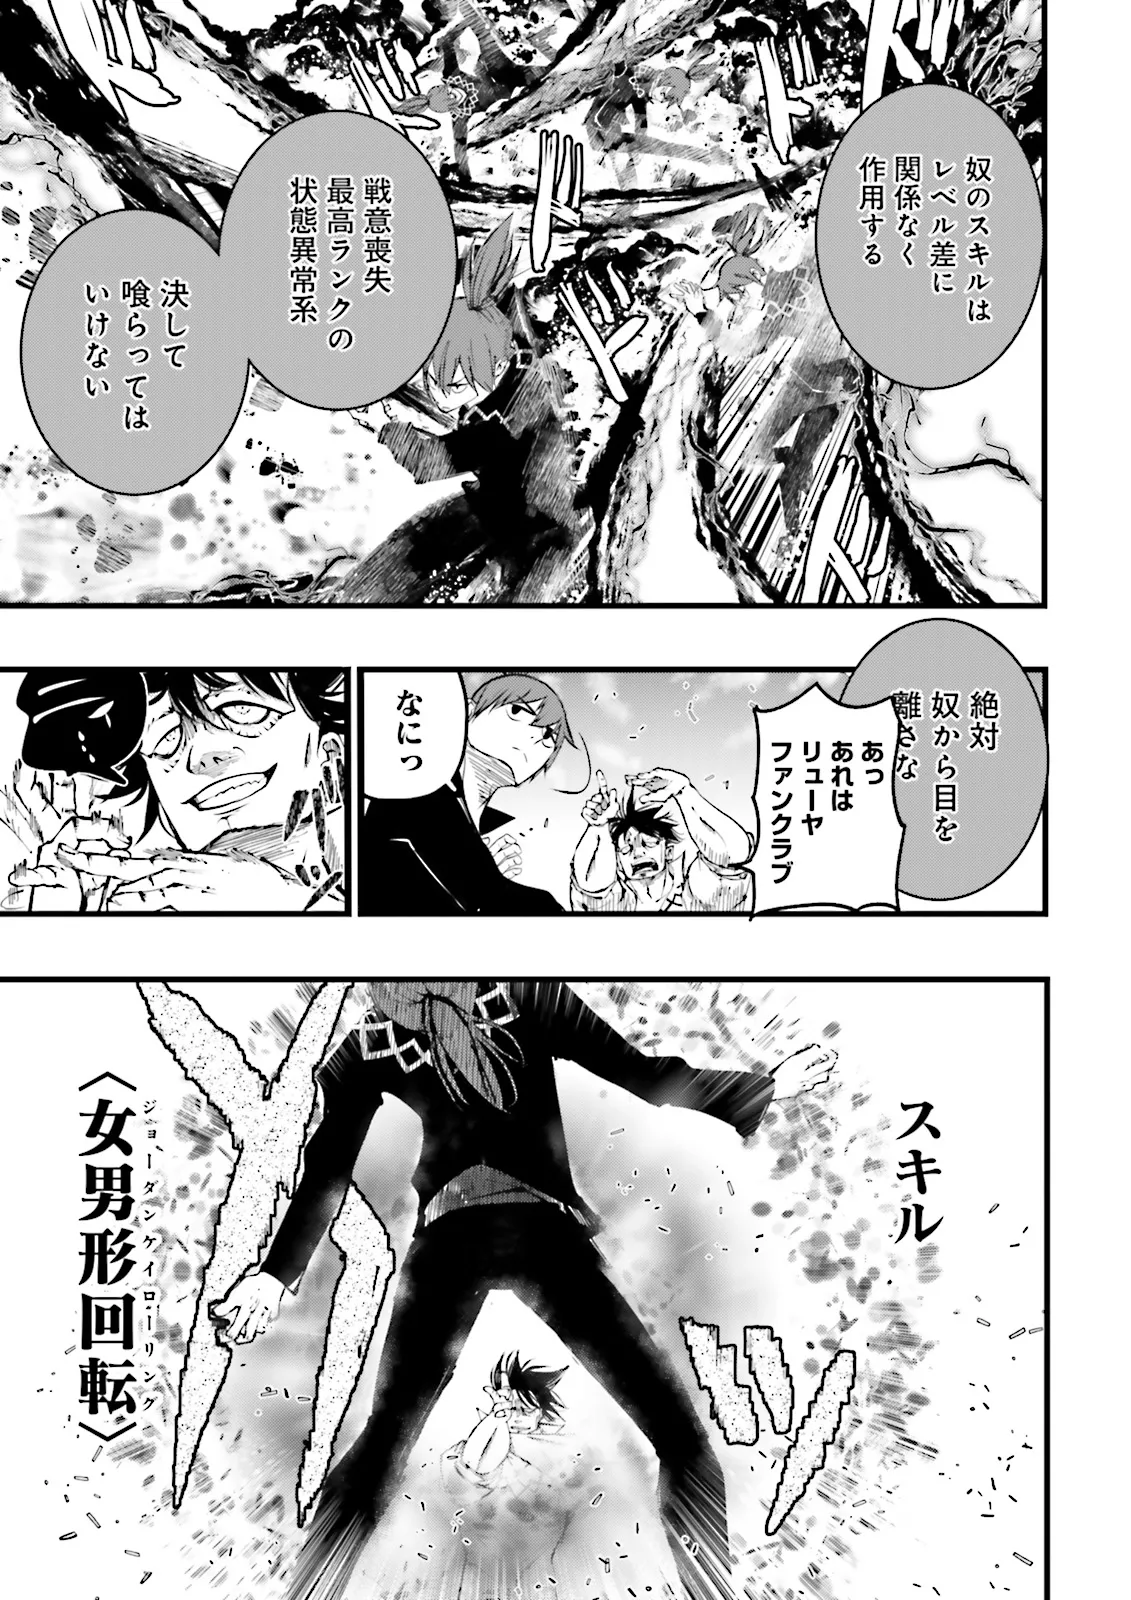 Sukiru Ga Nakereba Level wo Ageru ~ 99 Ga Kansuto No Sekai De Reberu 800 Man Kara Sutato ~ - Chapter 39.2 - Page 3